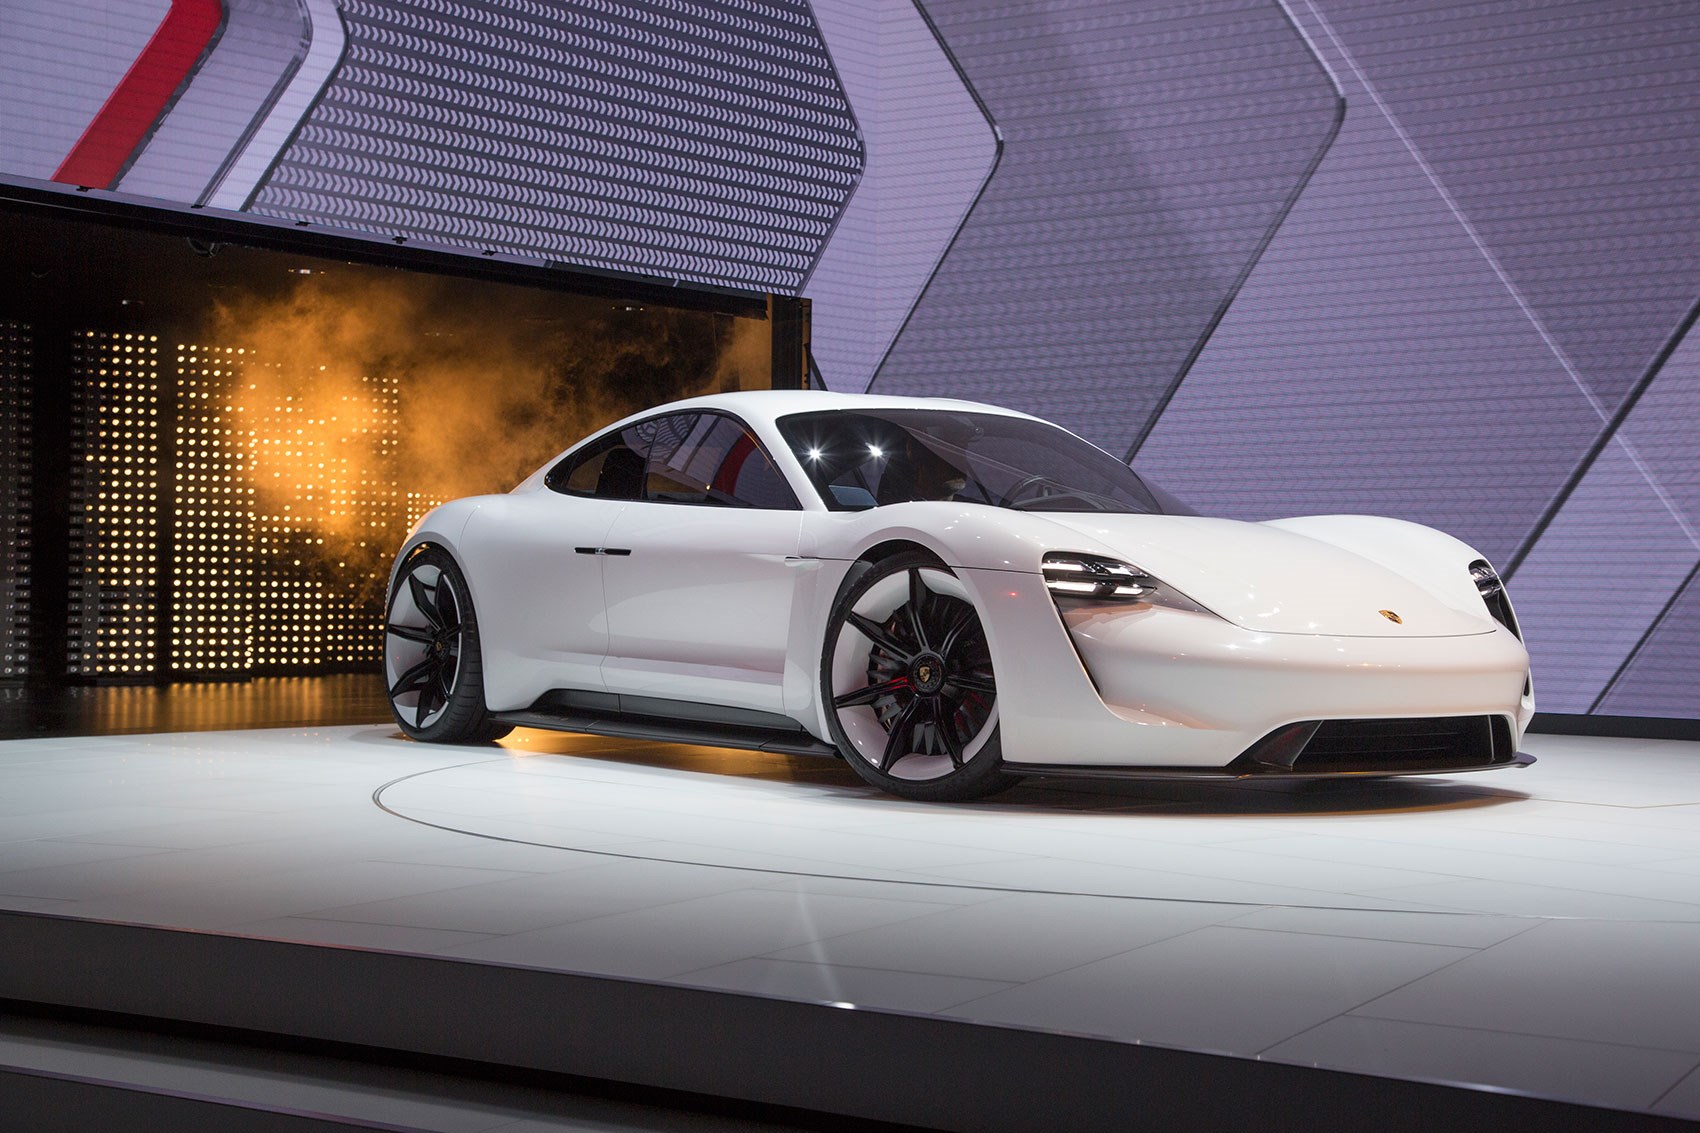 VIDEO: Designing A New Icon - The Porsche Mission E